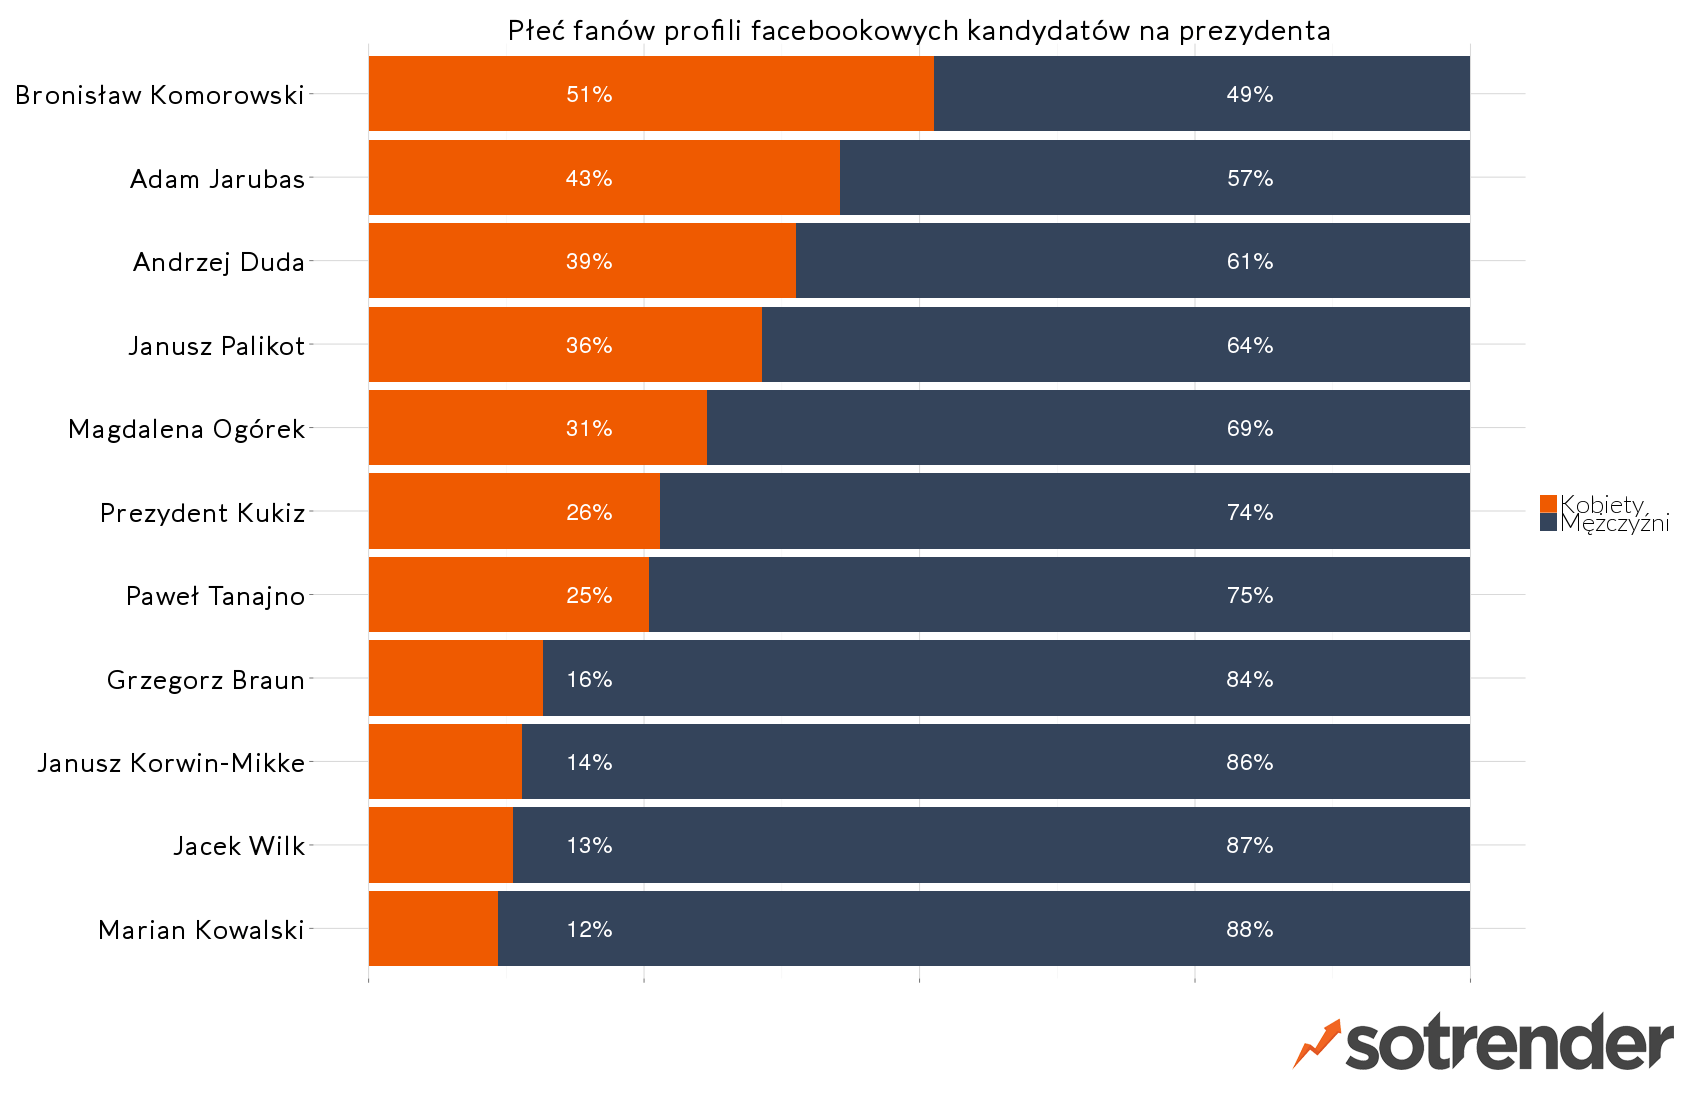 Demografia fanów stron kandydatów na prezydenta w wyborach 2015 - raport Sotrender